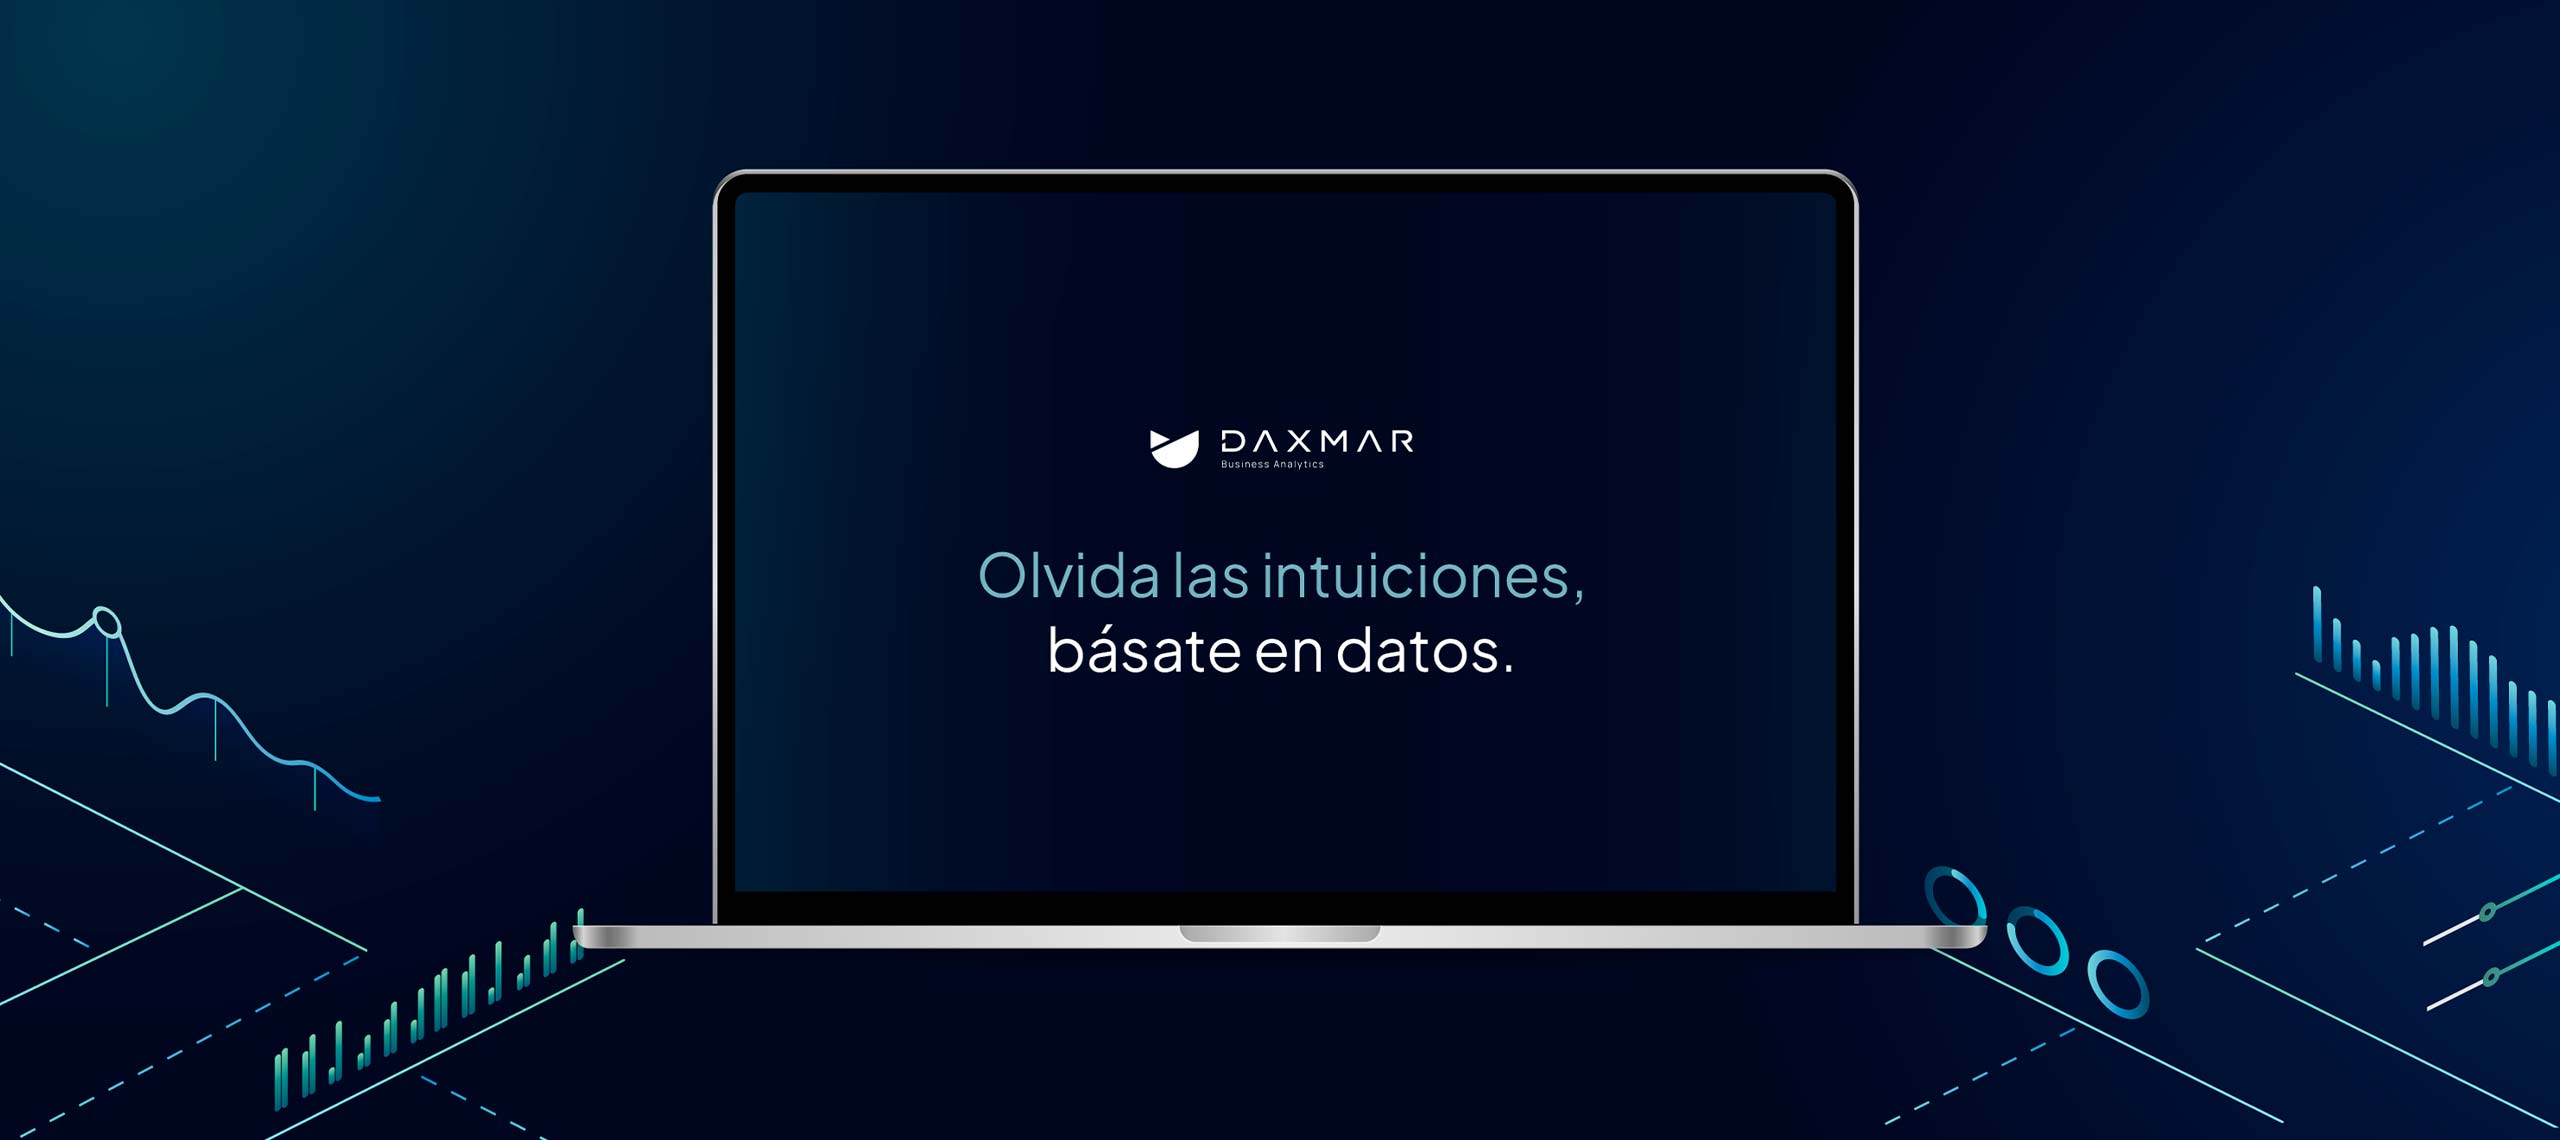 Homepage de Daxmar vista desde un ordenador portátil